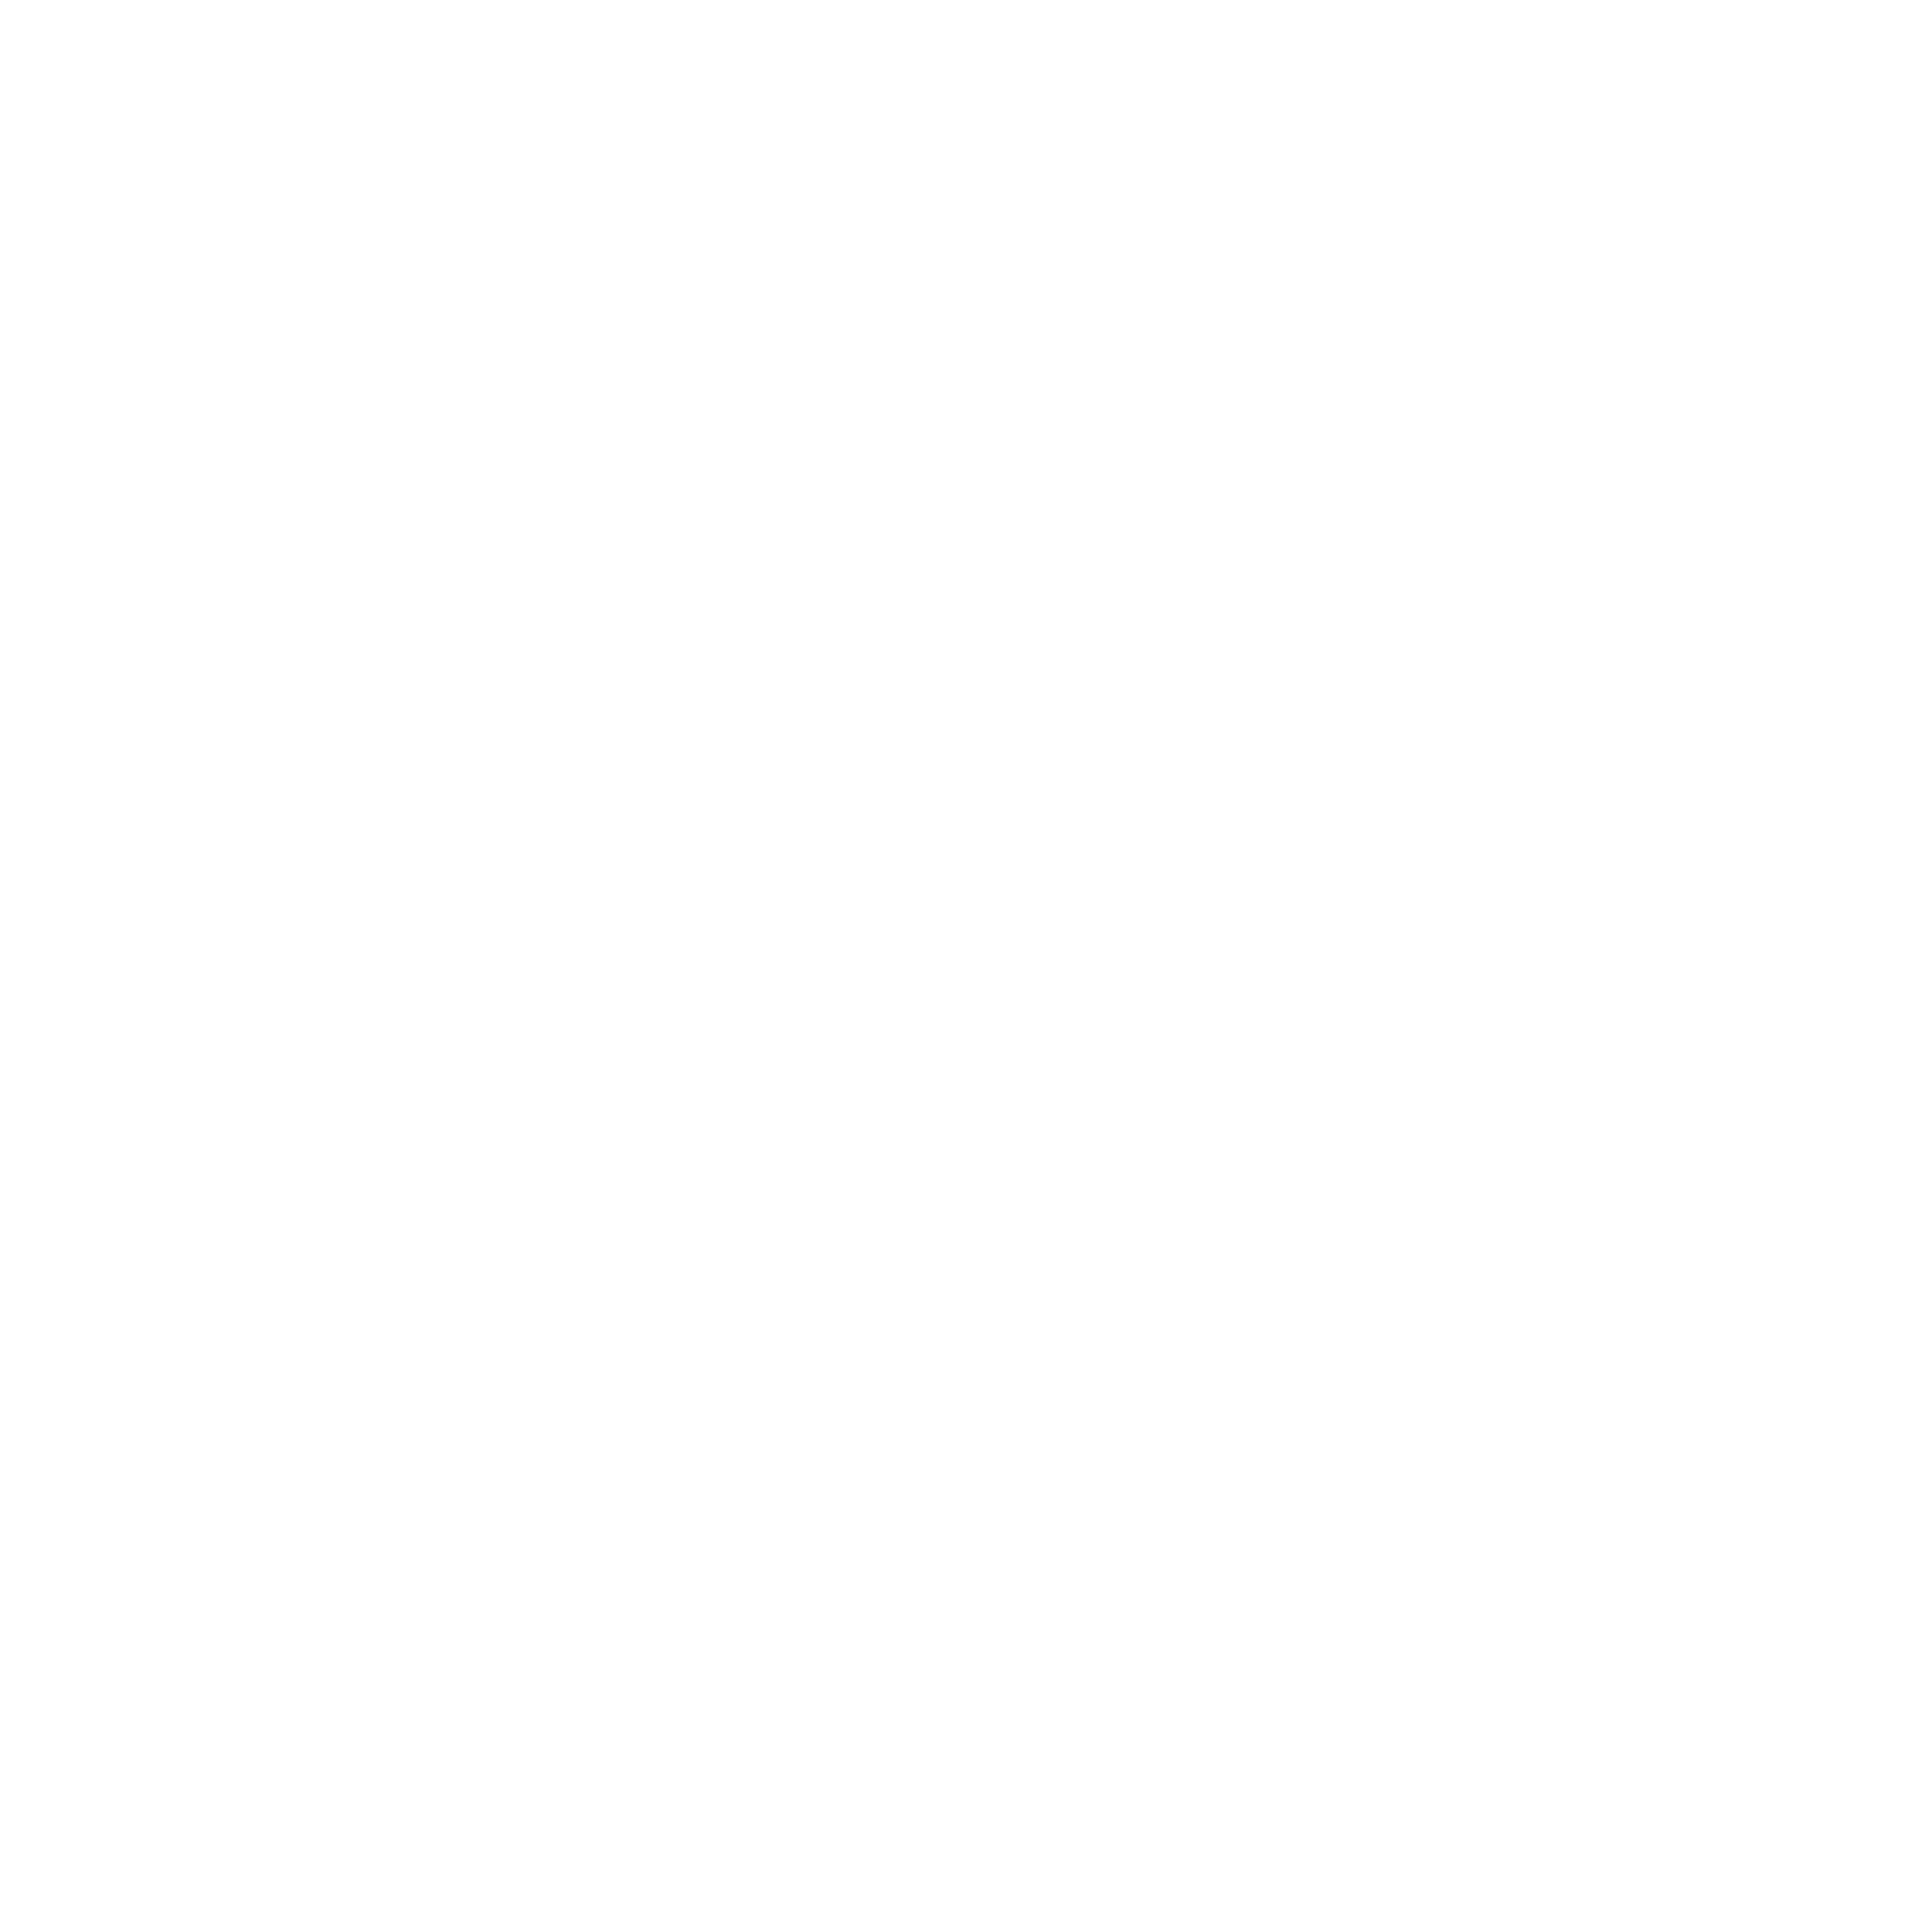 André Miller Konstruktionsbüro (and.miller)